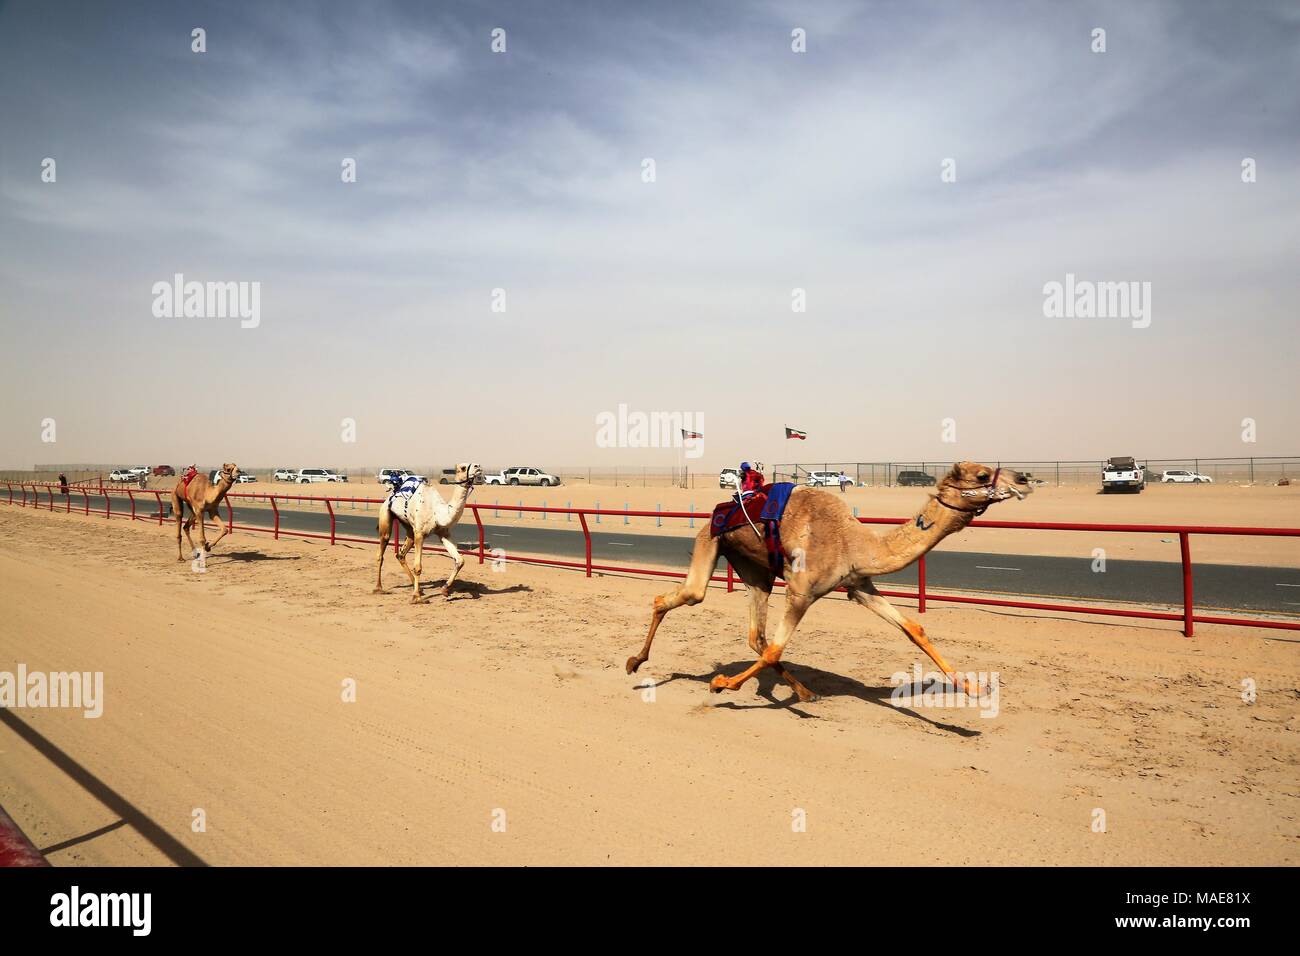 La ville de Koweït. Mar 31, 2018. Photo prise le 31 mars 2018 montre des chameaux en compétition dans une course avec des jockeys du robot sur leur dos dans le gouvernorat d'Al Ahmadi, dans le sud du Koweït. Course de chameaux est un secteur où la concurrence est très populaire événement sportif au Koweït, elle a lieu les samedis entre octobre et avril dans le gouvernorat d'Al Ahmadi, dans le sud du Koweït. Credit : Nie Yunpeng/Xinhua/Alamy Live News Banque D'Images